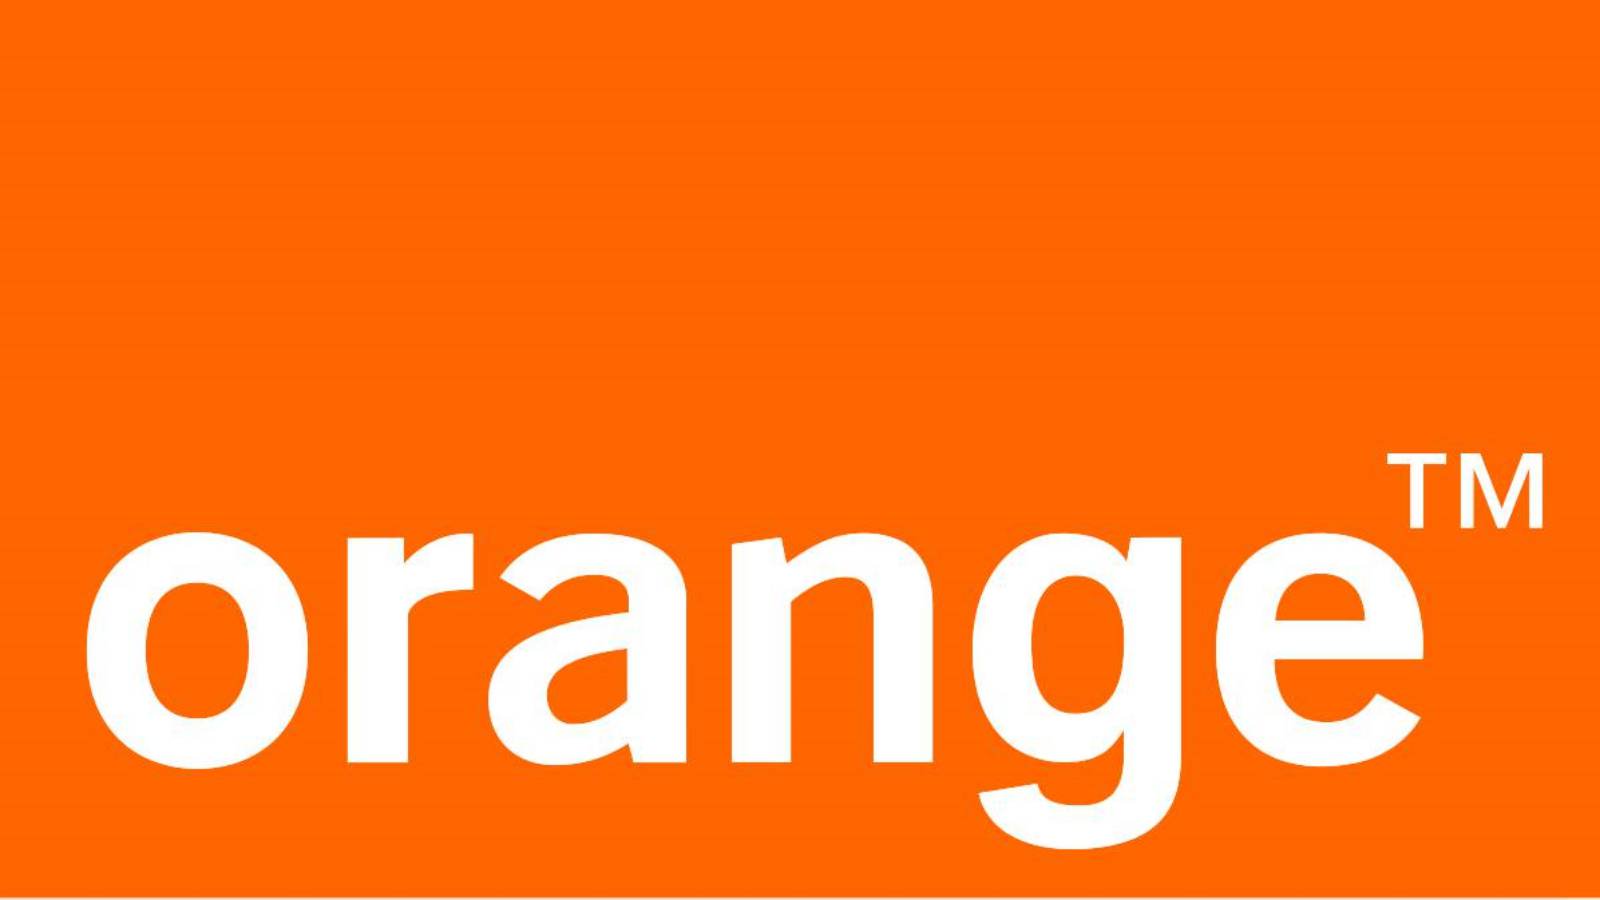 Orangefarbene Telefone, reduzierter Preis, 1. Mai